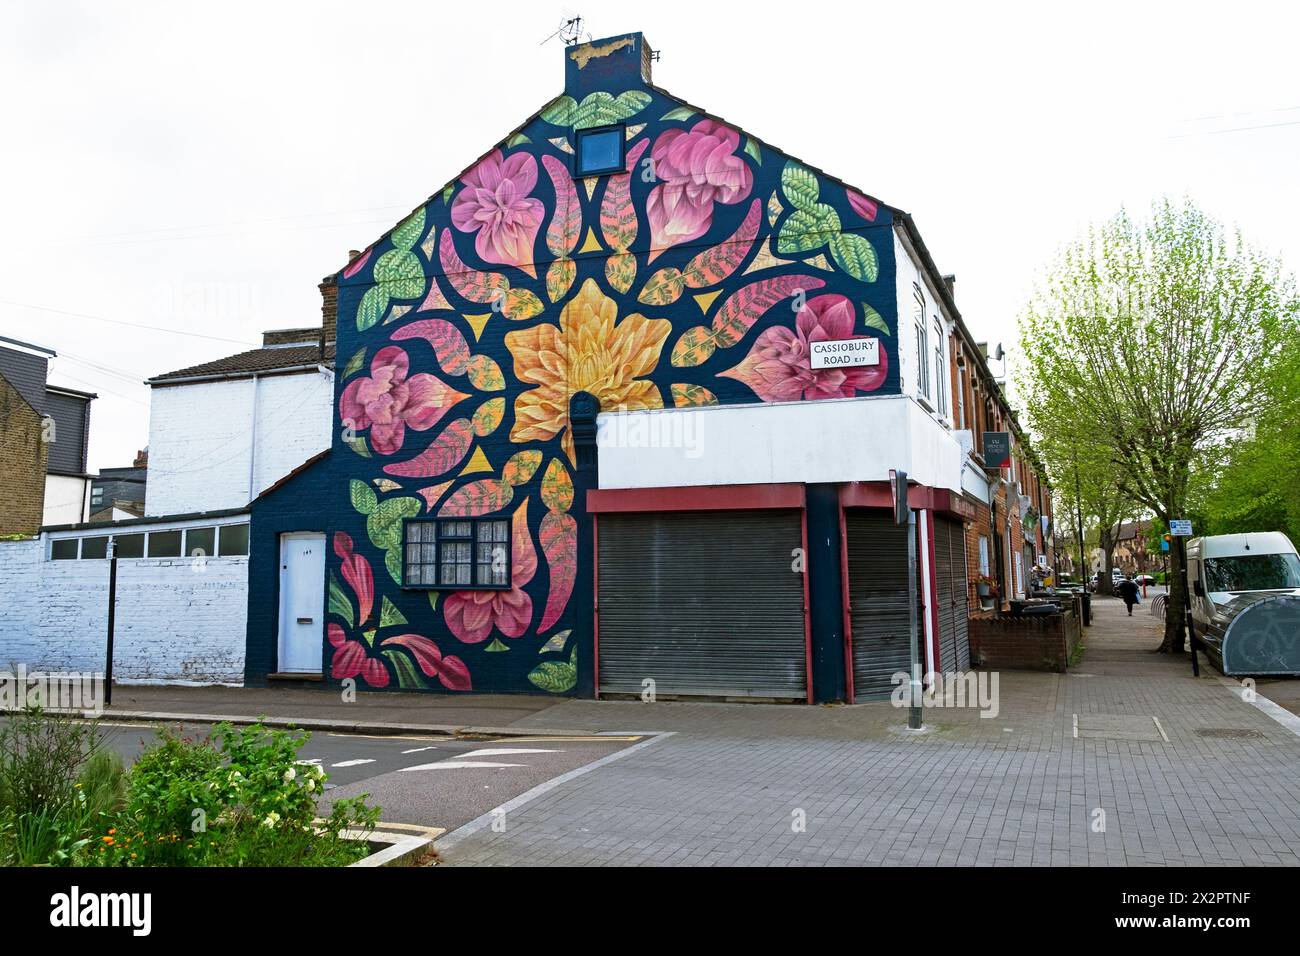 Peinture murale murale d'art floral coloré sur le côté pignon de la maison à Walthamstow Londres E17 Angleterre Royaume-Uni KATHY DEWITT Banque D'Images